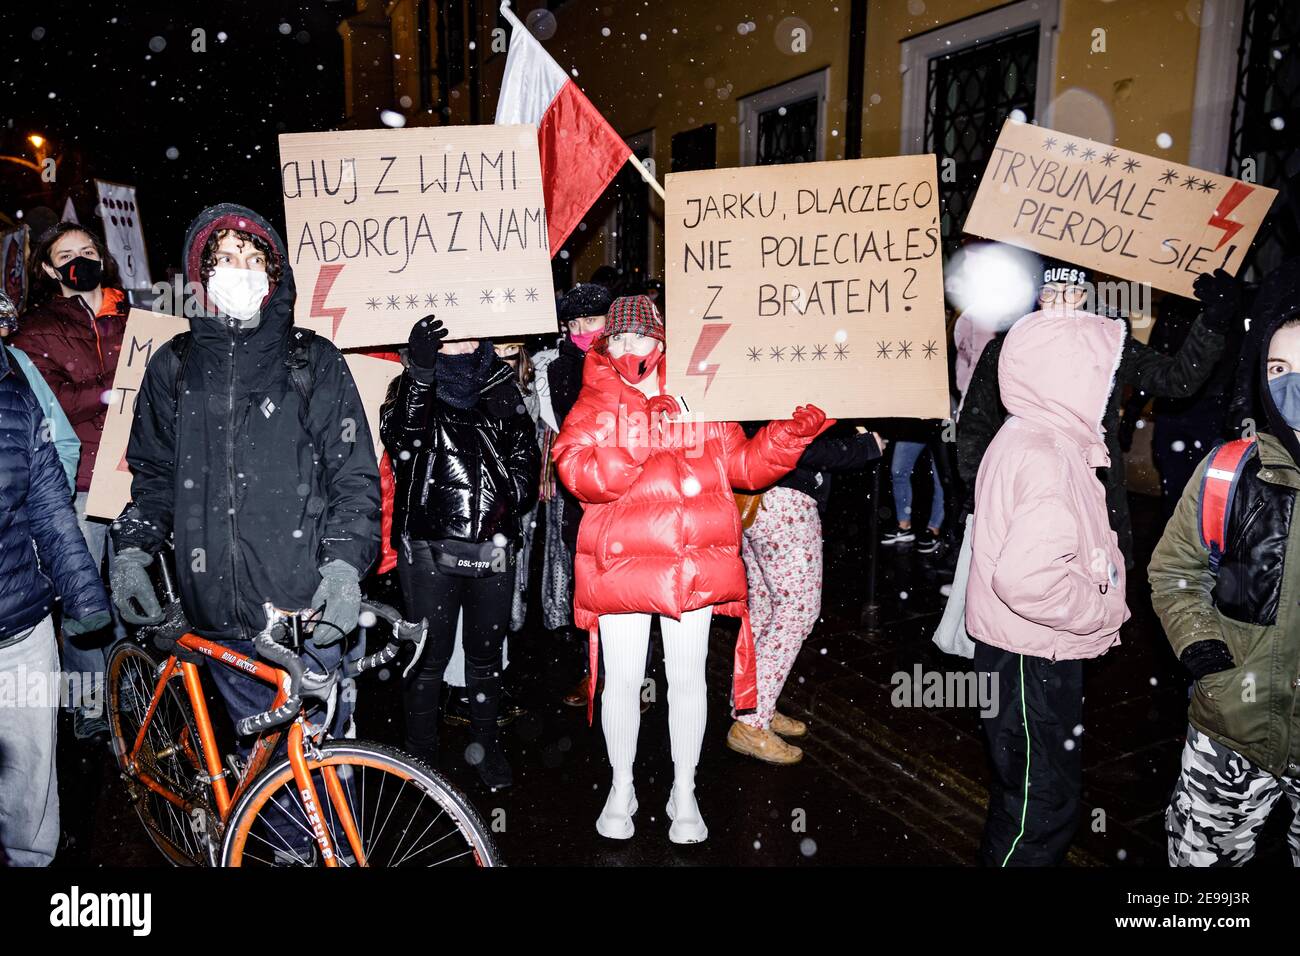 Demonstranten hielten Plakate, die ihre Meinung während der Demonstrationen zum Ausdruck brachten.nach dem Urteil des polnischen Verfassungsgerichts, das am 27th. Januar in Kraft trat, um eines der restriktivsten Anti-Abtreibungsgesetze in Europa umzusetzen, gingen Hunderte von Polen in allen größeren Städten auf die Straße. Die Proteste wurden vom Frauenstreik organisiert. Stockfoto